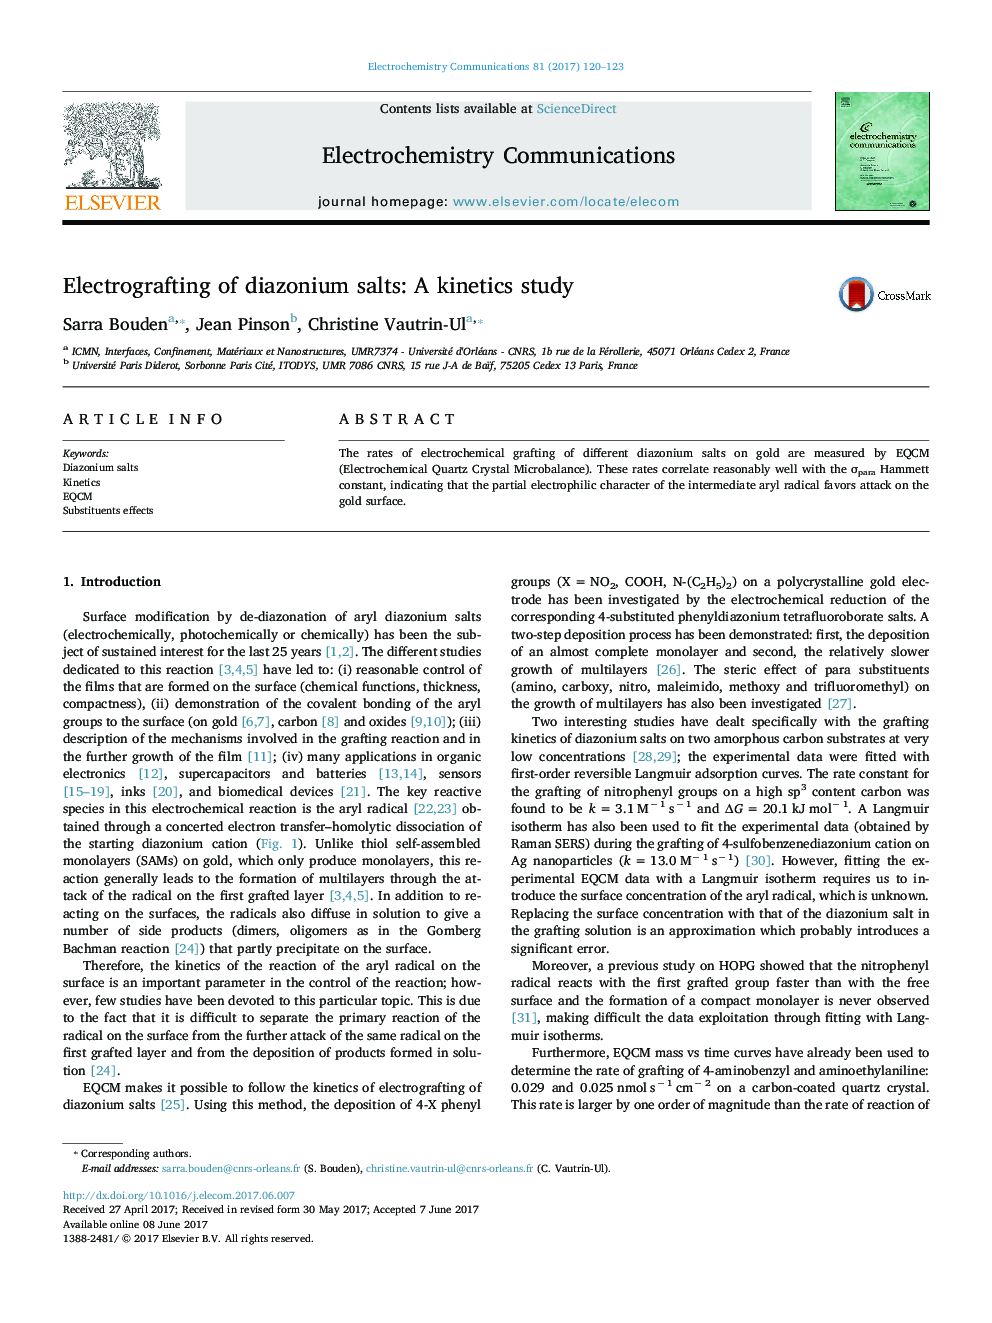 الکتراژ کردن نمکهای دیازونیم: یک مطالعه سینتیکی